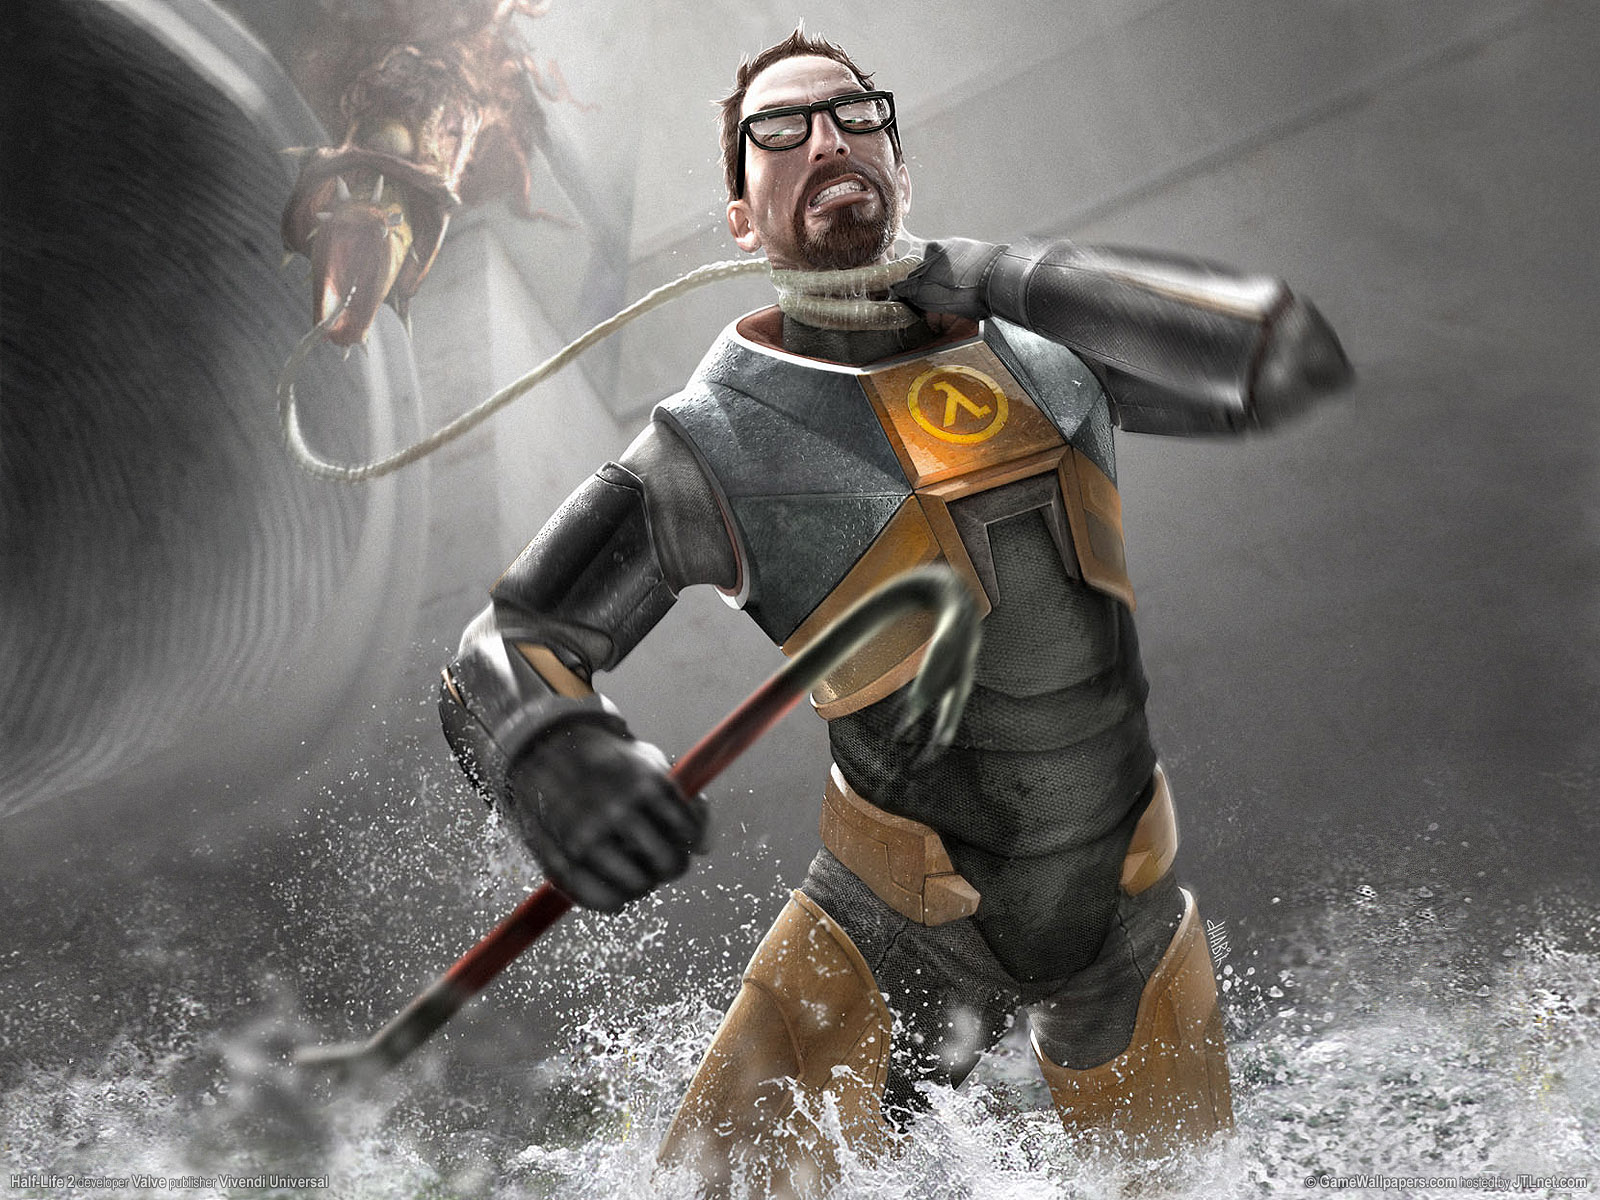 Fond d'ecran Half-Life